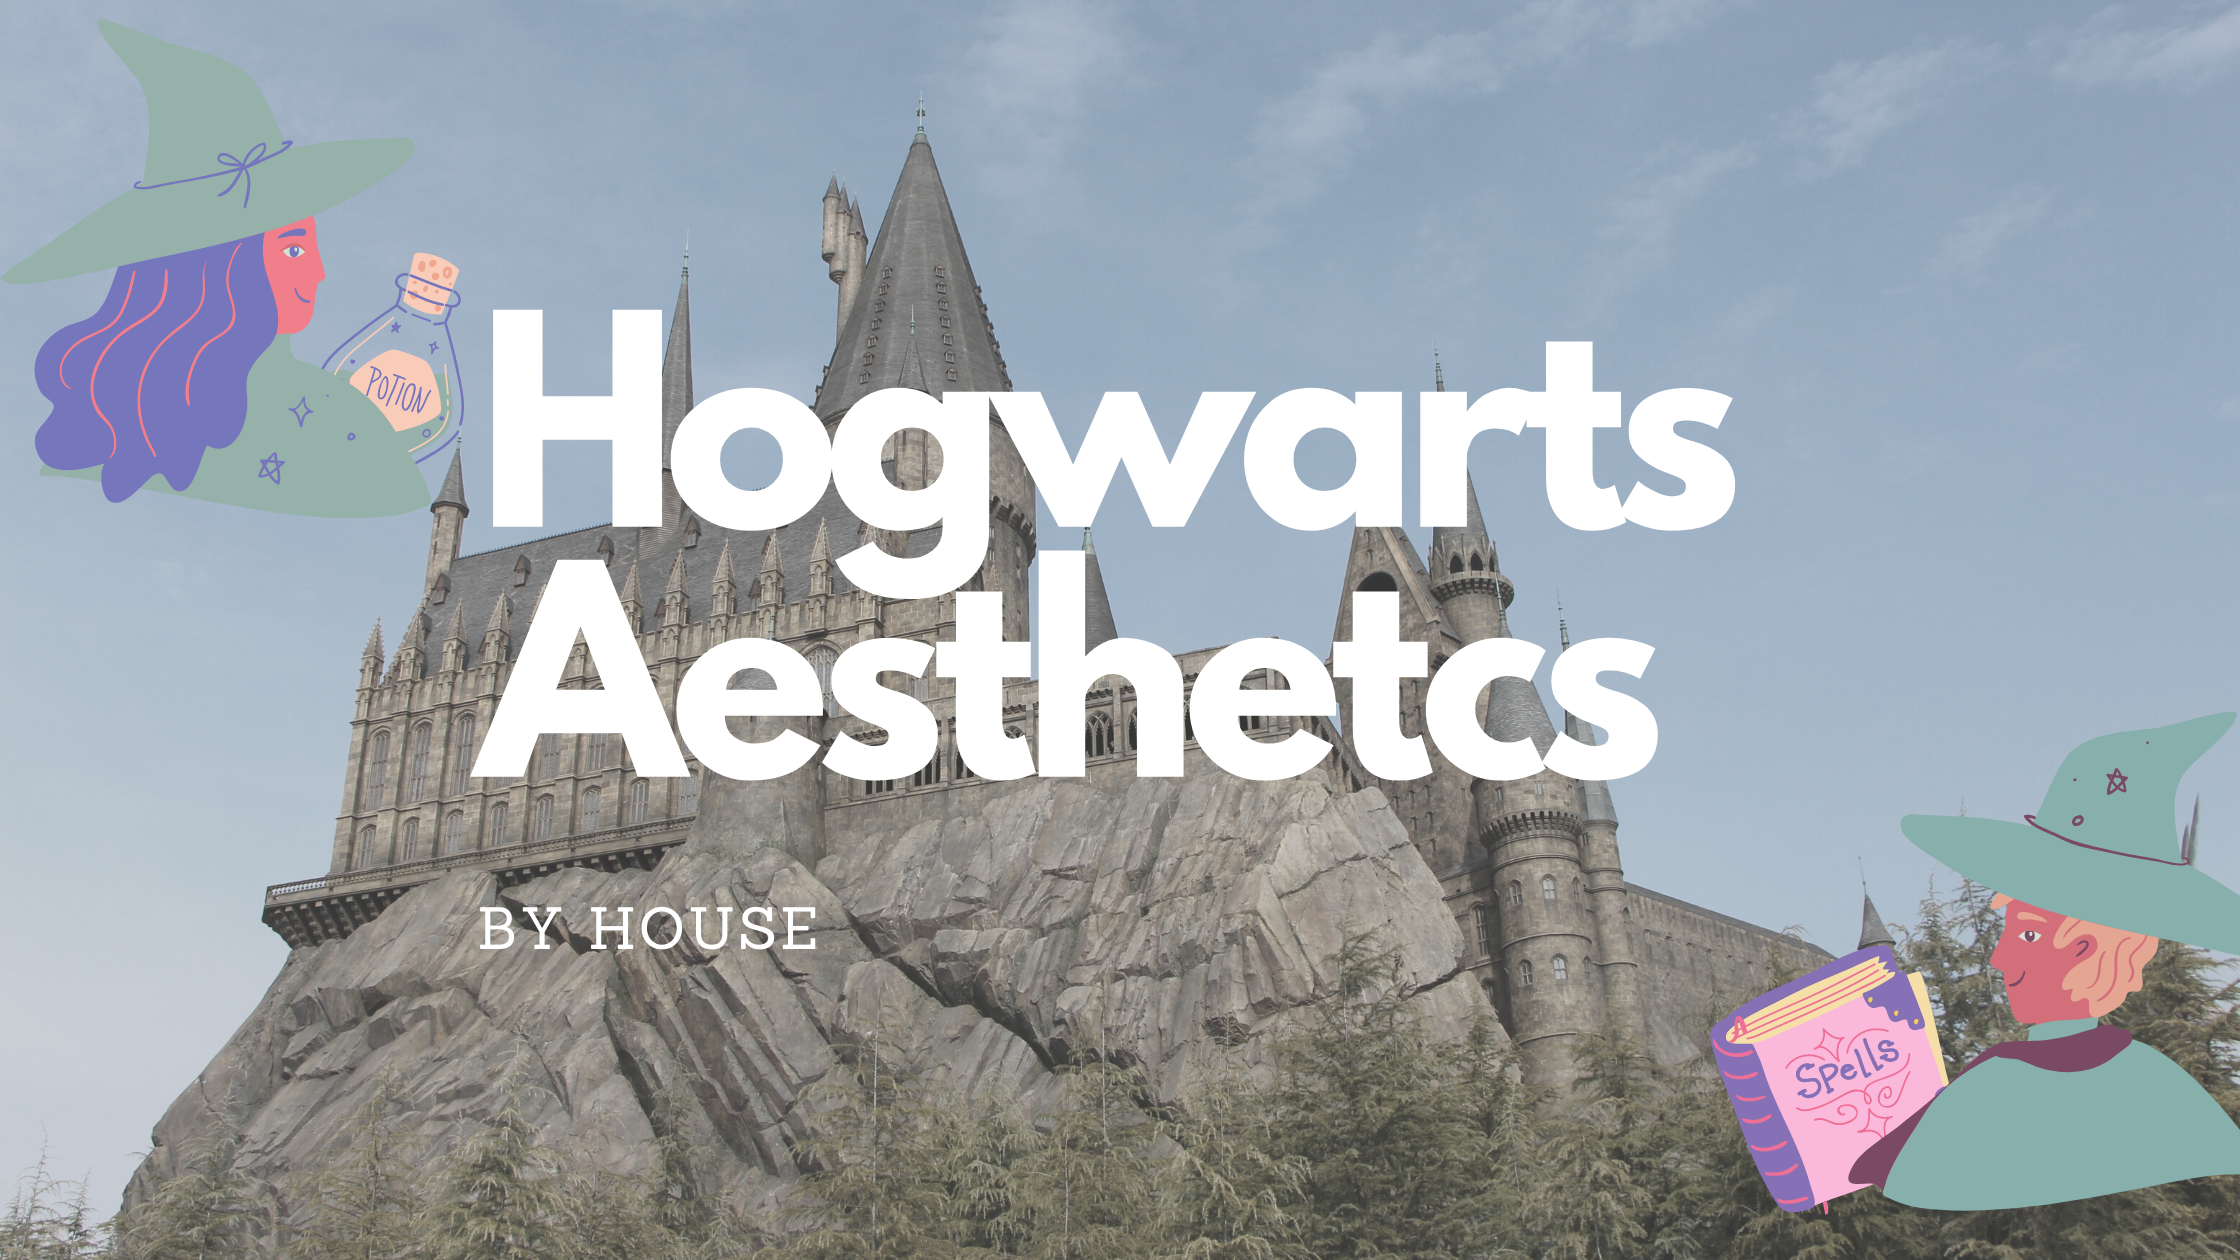 Hogwarts aesthetics by house